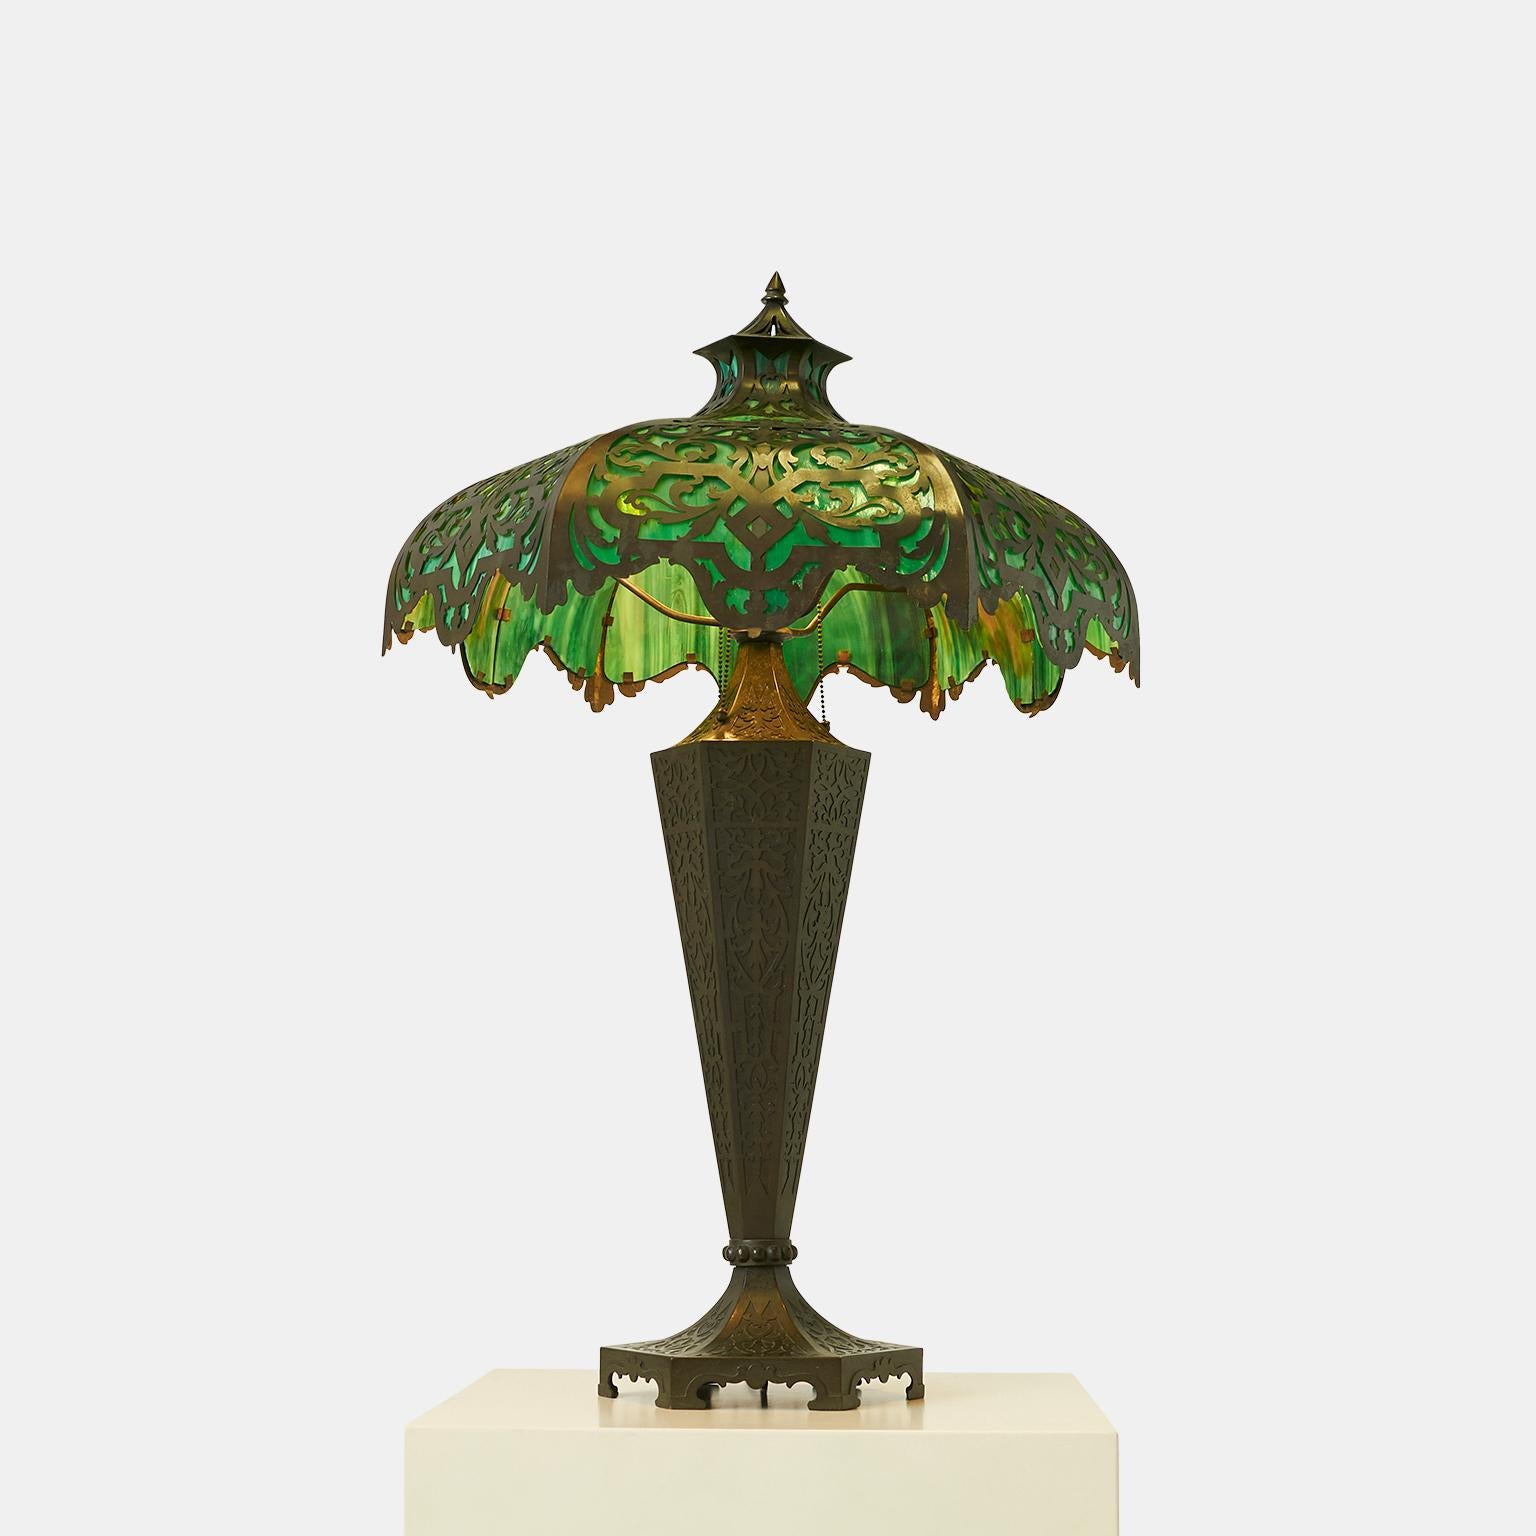 Bradley & Hubbard Tischlampe mit Attributen
Große achteckige, getäfelte Tischlampe mit grünem Schlackenglasschirm, #T9365 auf Sockel, #18 872 Meriden, Connecticut. Der Sockel ist aus bronzefarbenem, patiniertem Metall gefertigt und mit geprägten